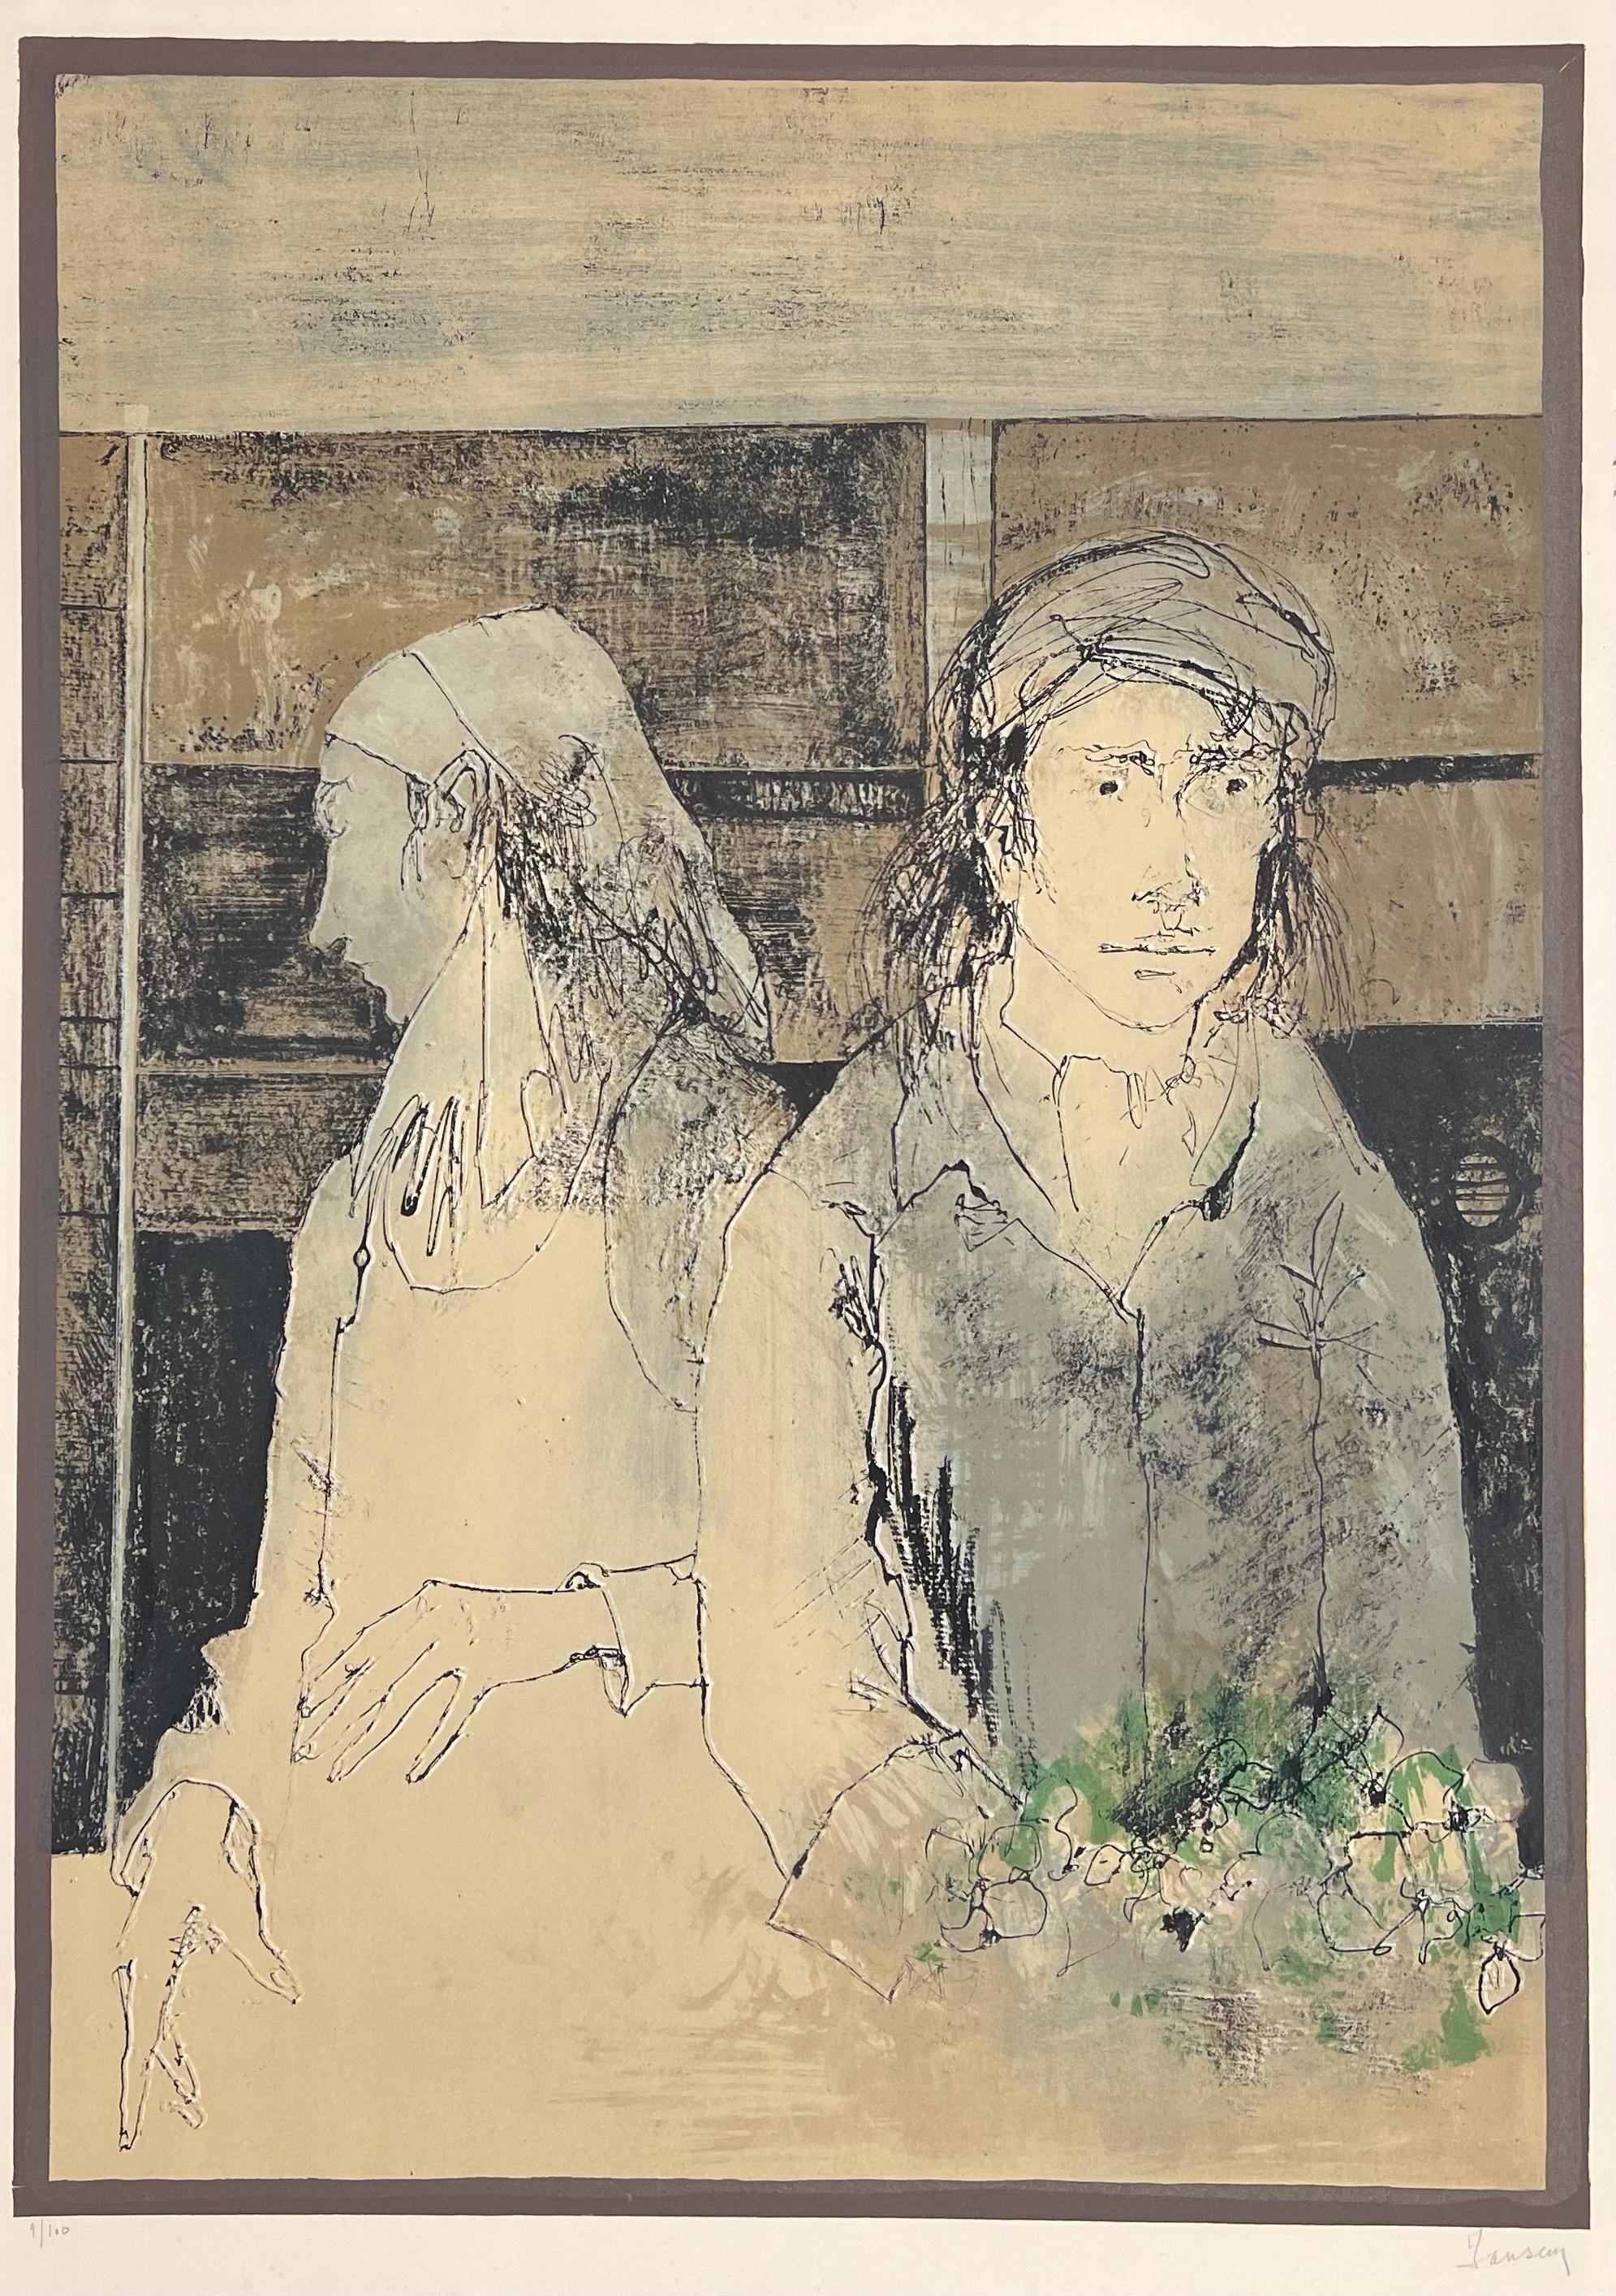 Jean Jansem (1920-2013) 
Le couple au bouquet vert, 1974
Lithographie sur papier Arches
Signée en bas à droite et justifiée en bas à gauche 
69 x 51,5 cm / 76 x 54,5 cm

D'une édition à 100 exemplaires  et 15 épreuves